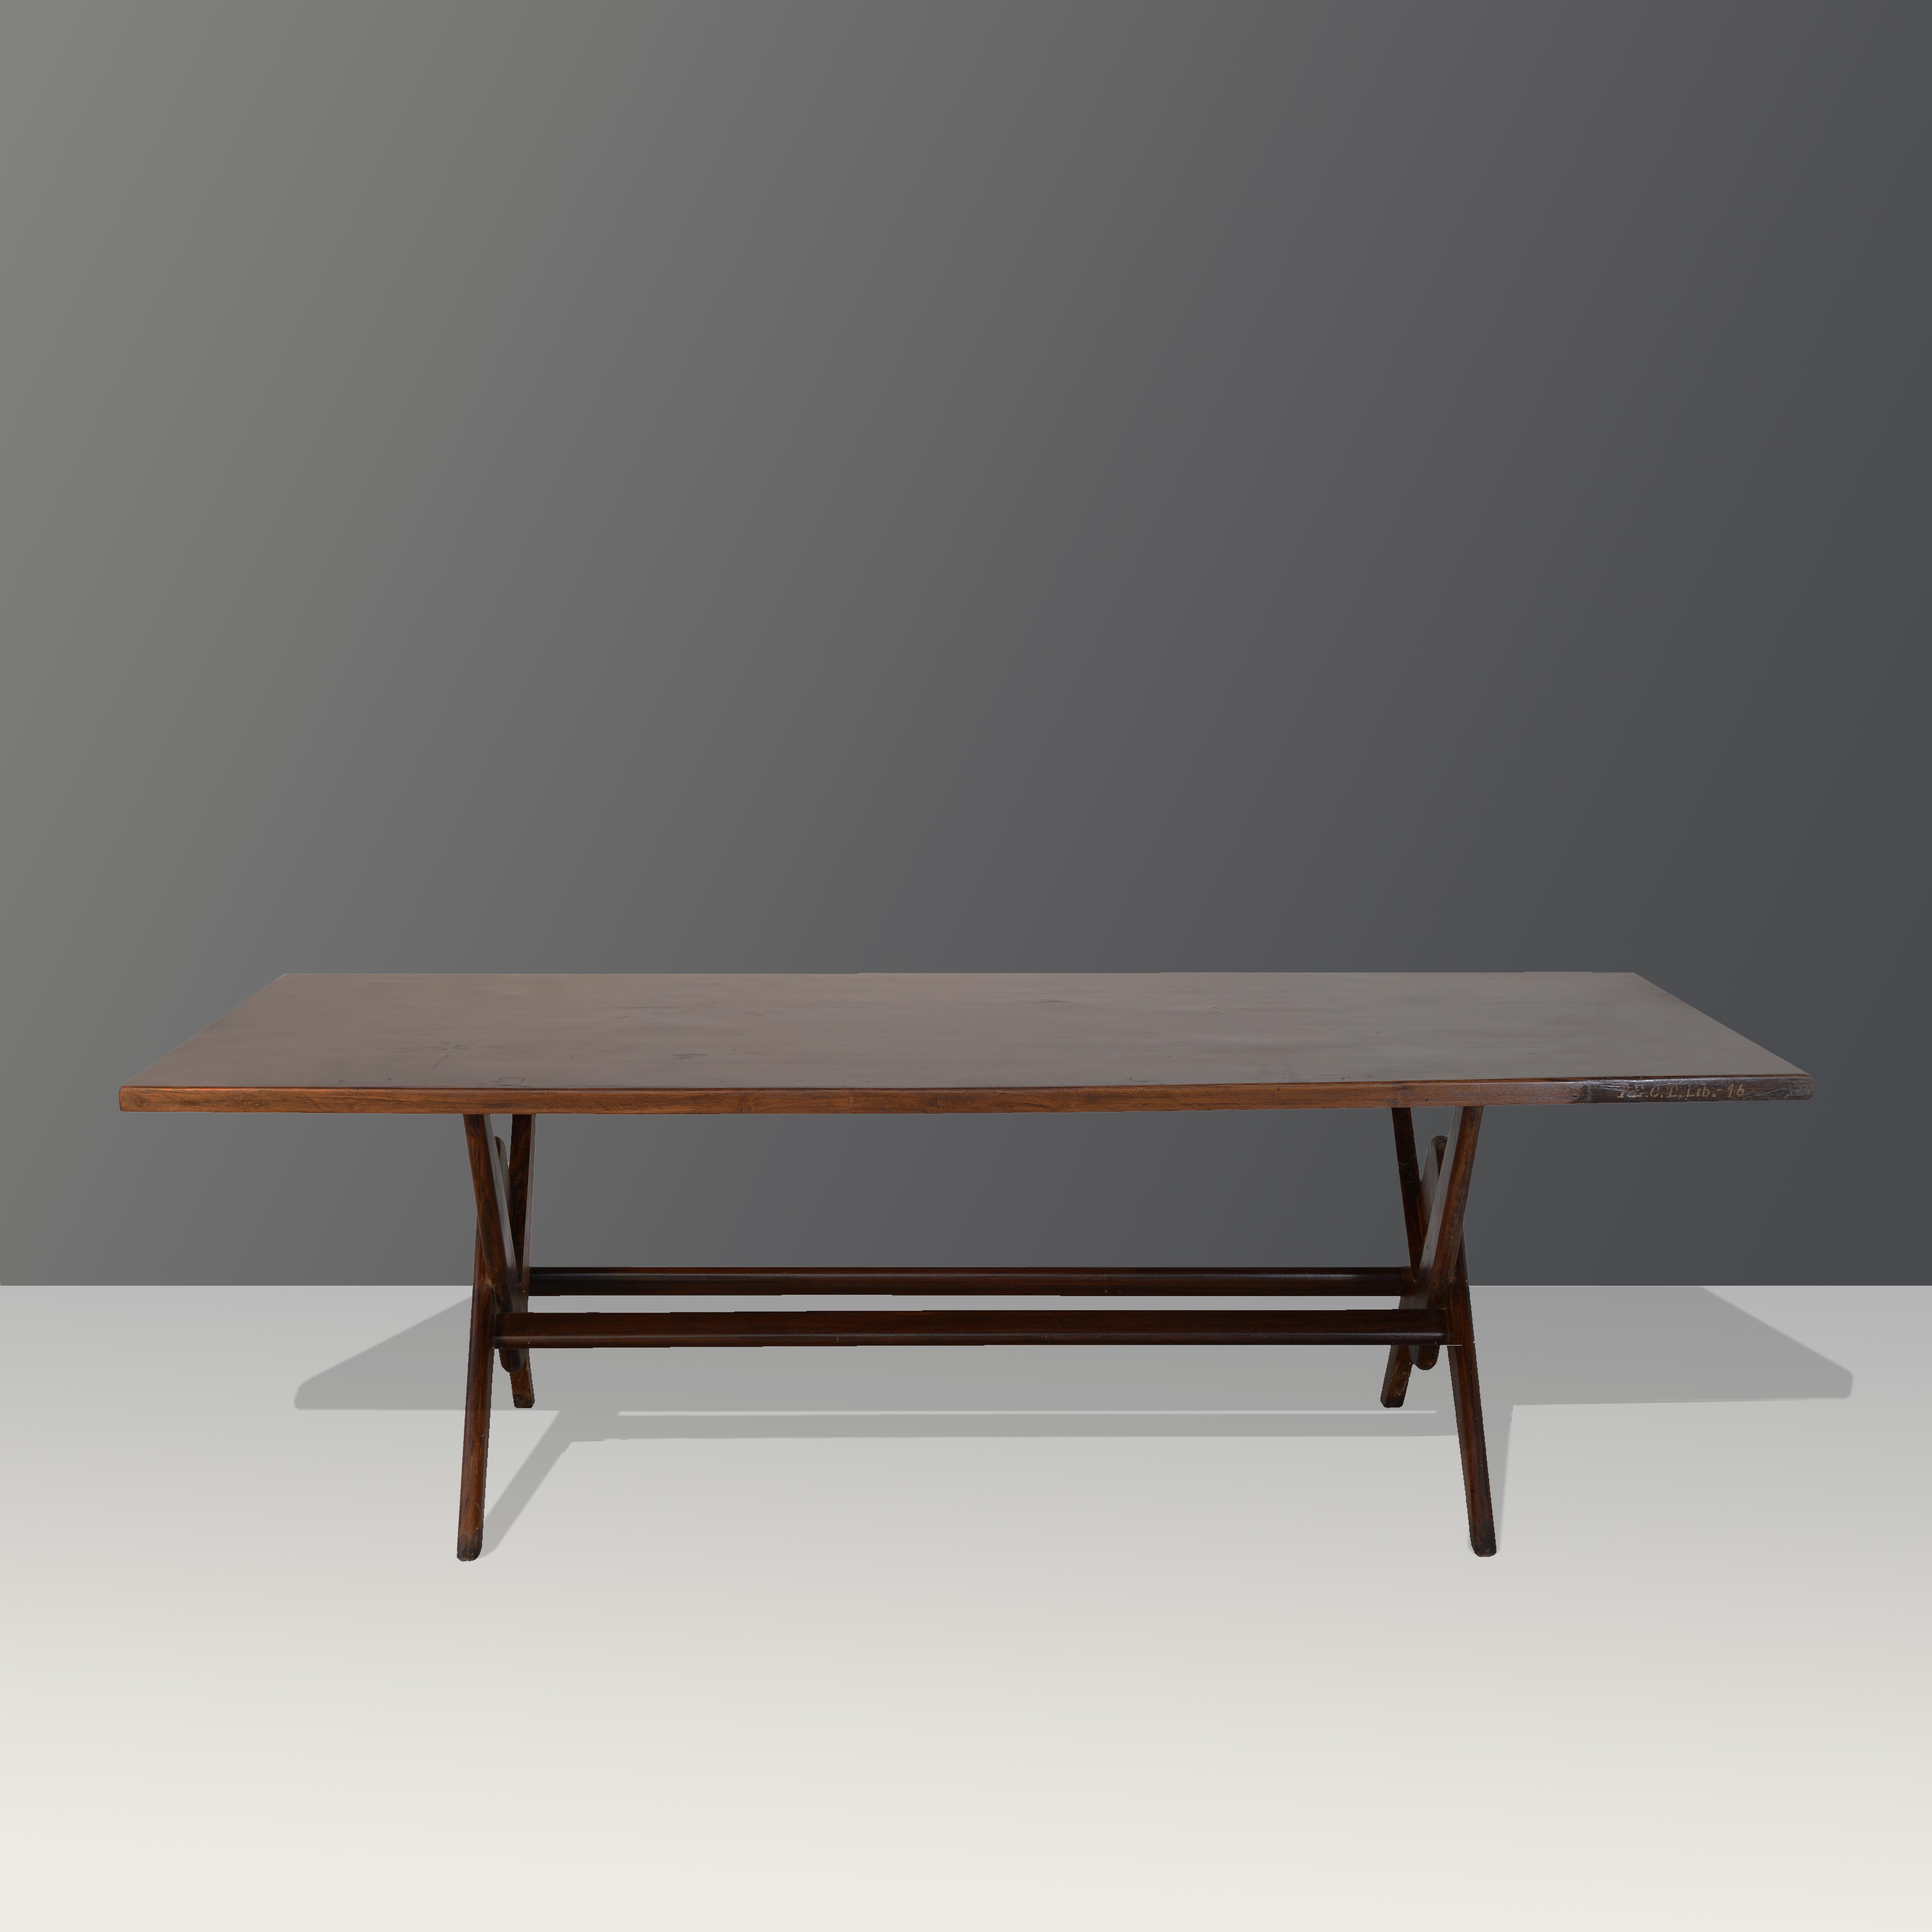 Cette table est une pièce de design emblématique créée par Le Corbusier et Pierre Jeanneret. Il est brut dans sa simplicité et présente une matière légèrement patinée. Sa forme est magnifiquement fragile et sa couleur est magnifique. Nous ne les